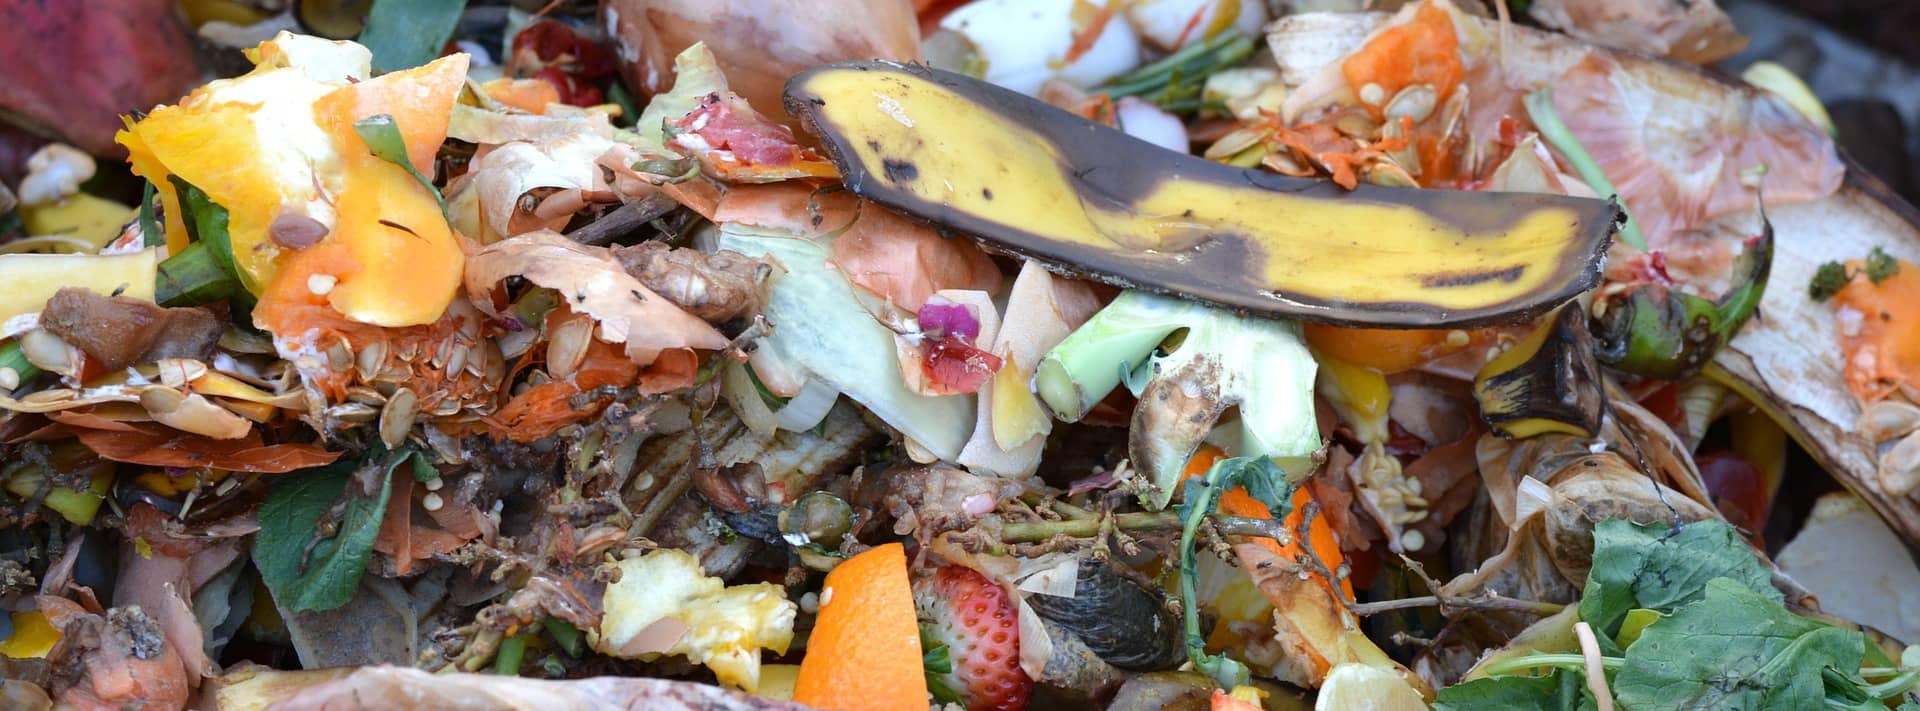 Komposthaufen mit Resten von Lebensmitteln